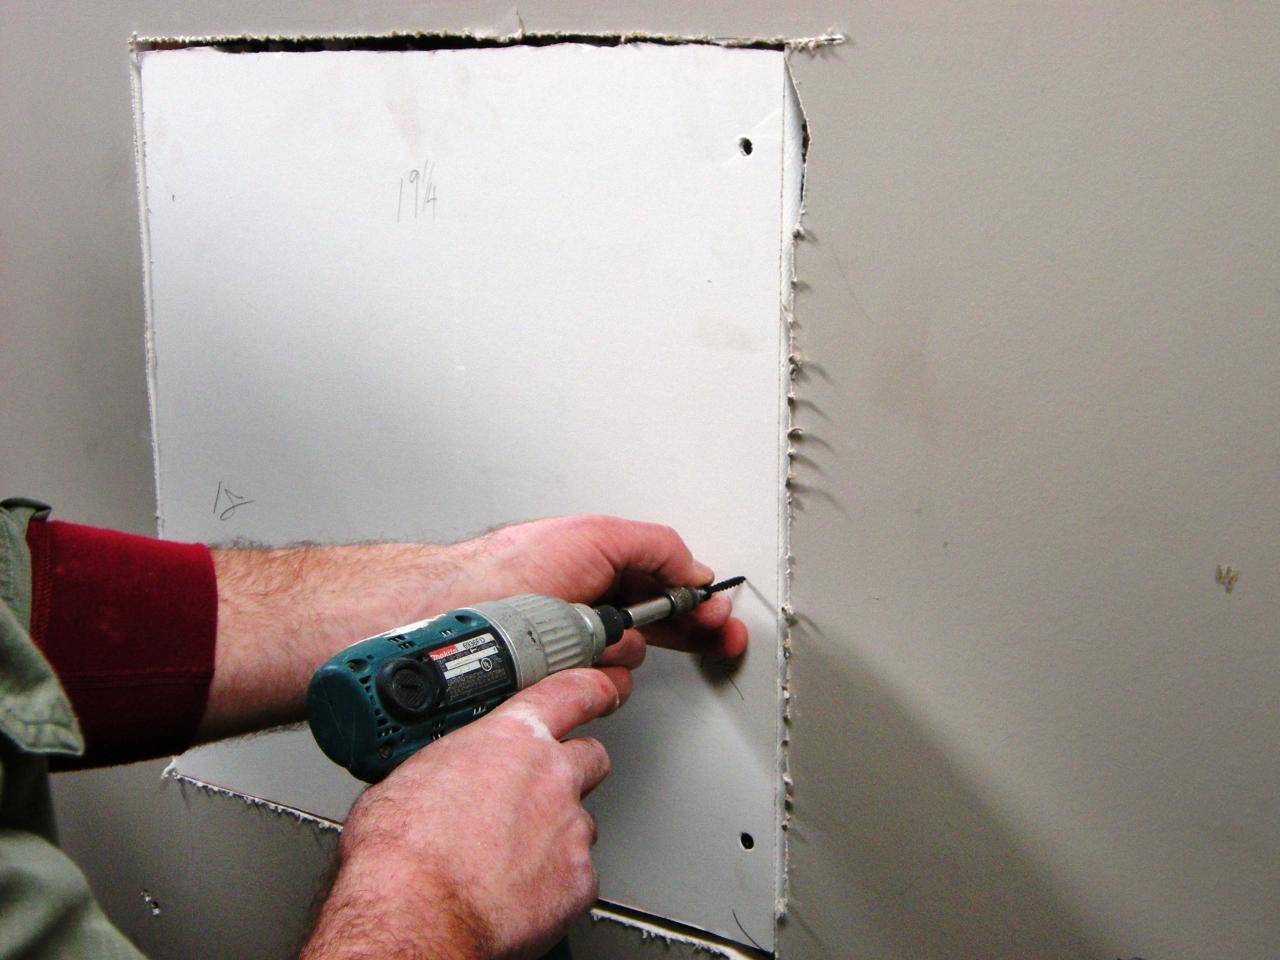 Ремонтируем трещины на потолке шпатлёвкой и герметиком: пошаговое руководство – советы по ремонту